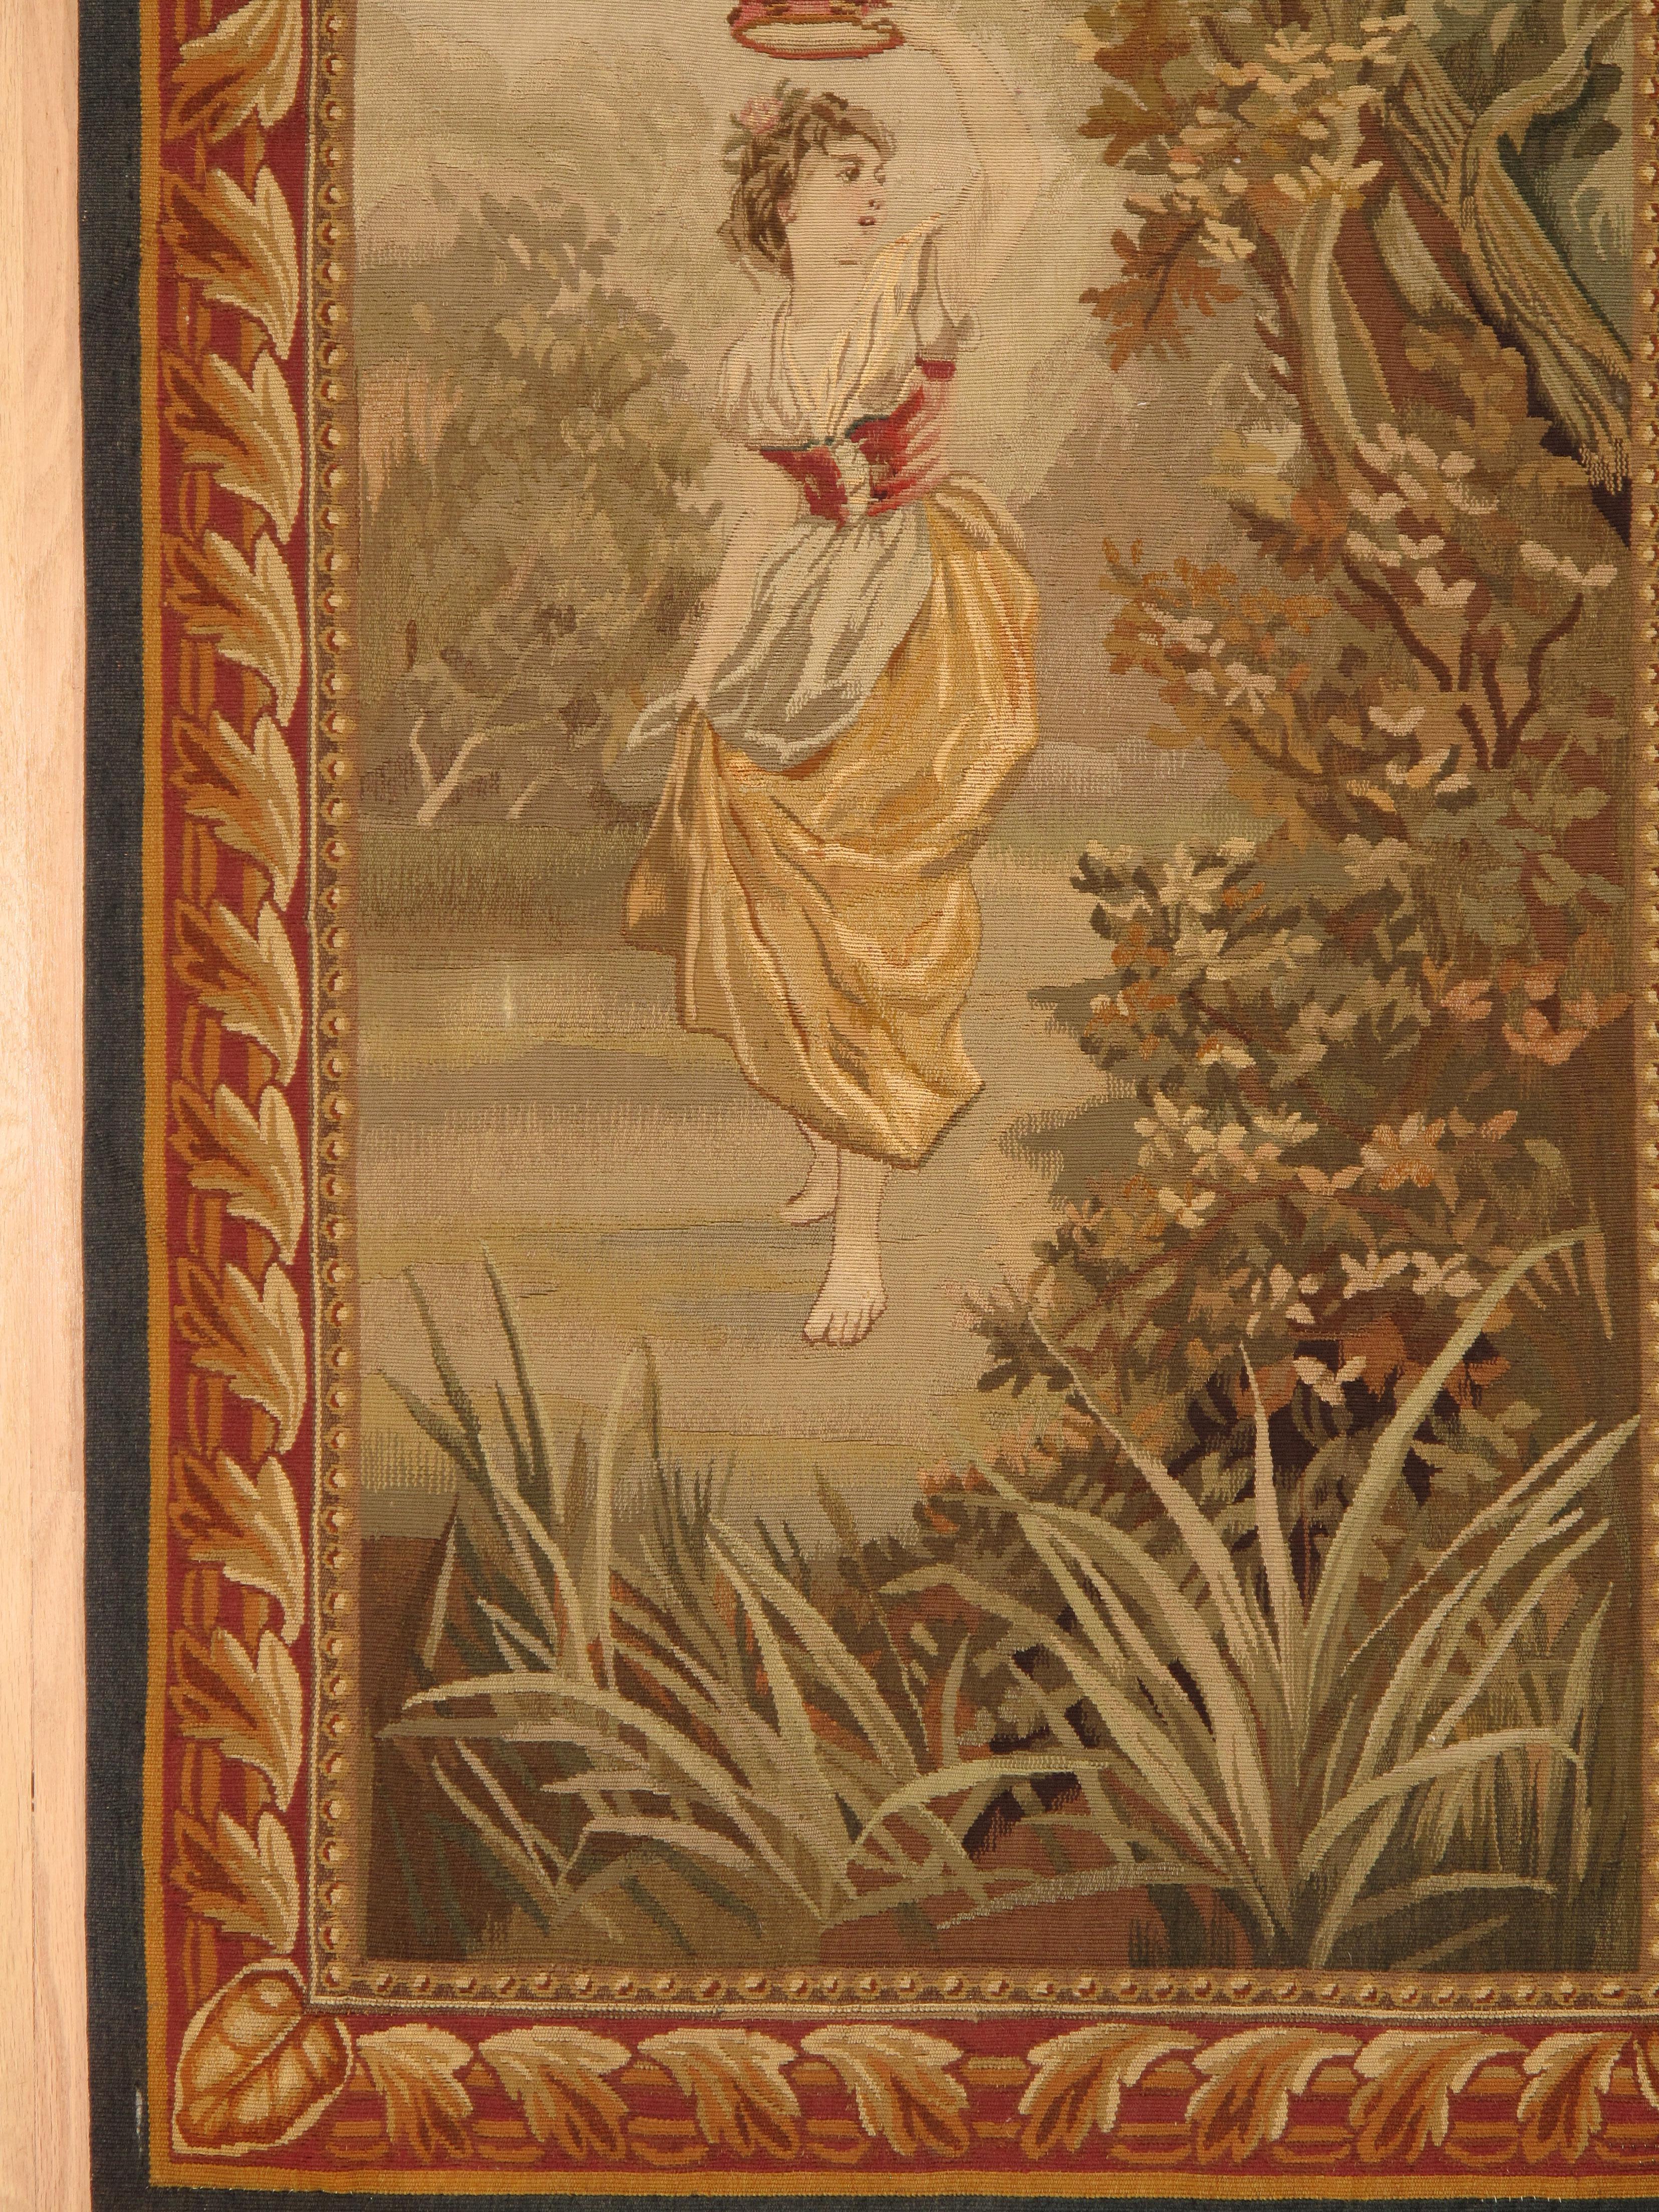 Dieser Aubusson-Wandteppich aus dem 19. Jahrhundert zeigt eine junge Dame, die tanzend durch den Wald spaziert, während sie Tamburin spielt, und ist ein fesselndes Meisterwerk, das die Essenz von Eleganz, Anmut und Lebensfreude einfängt. Dieser 1885